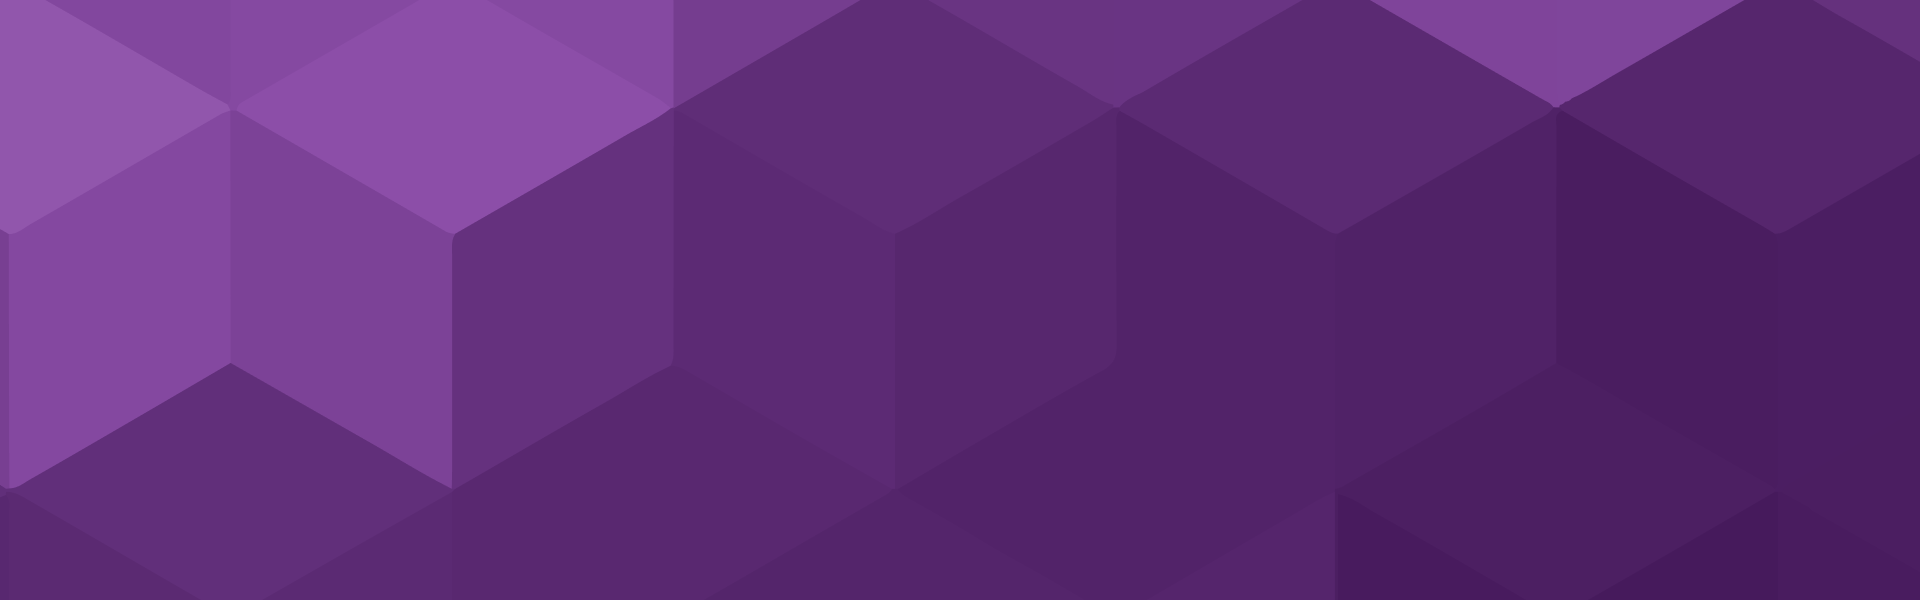 purple hex pattern background